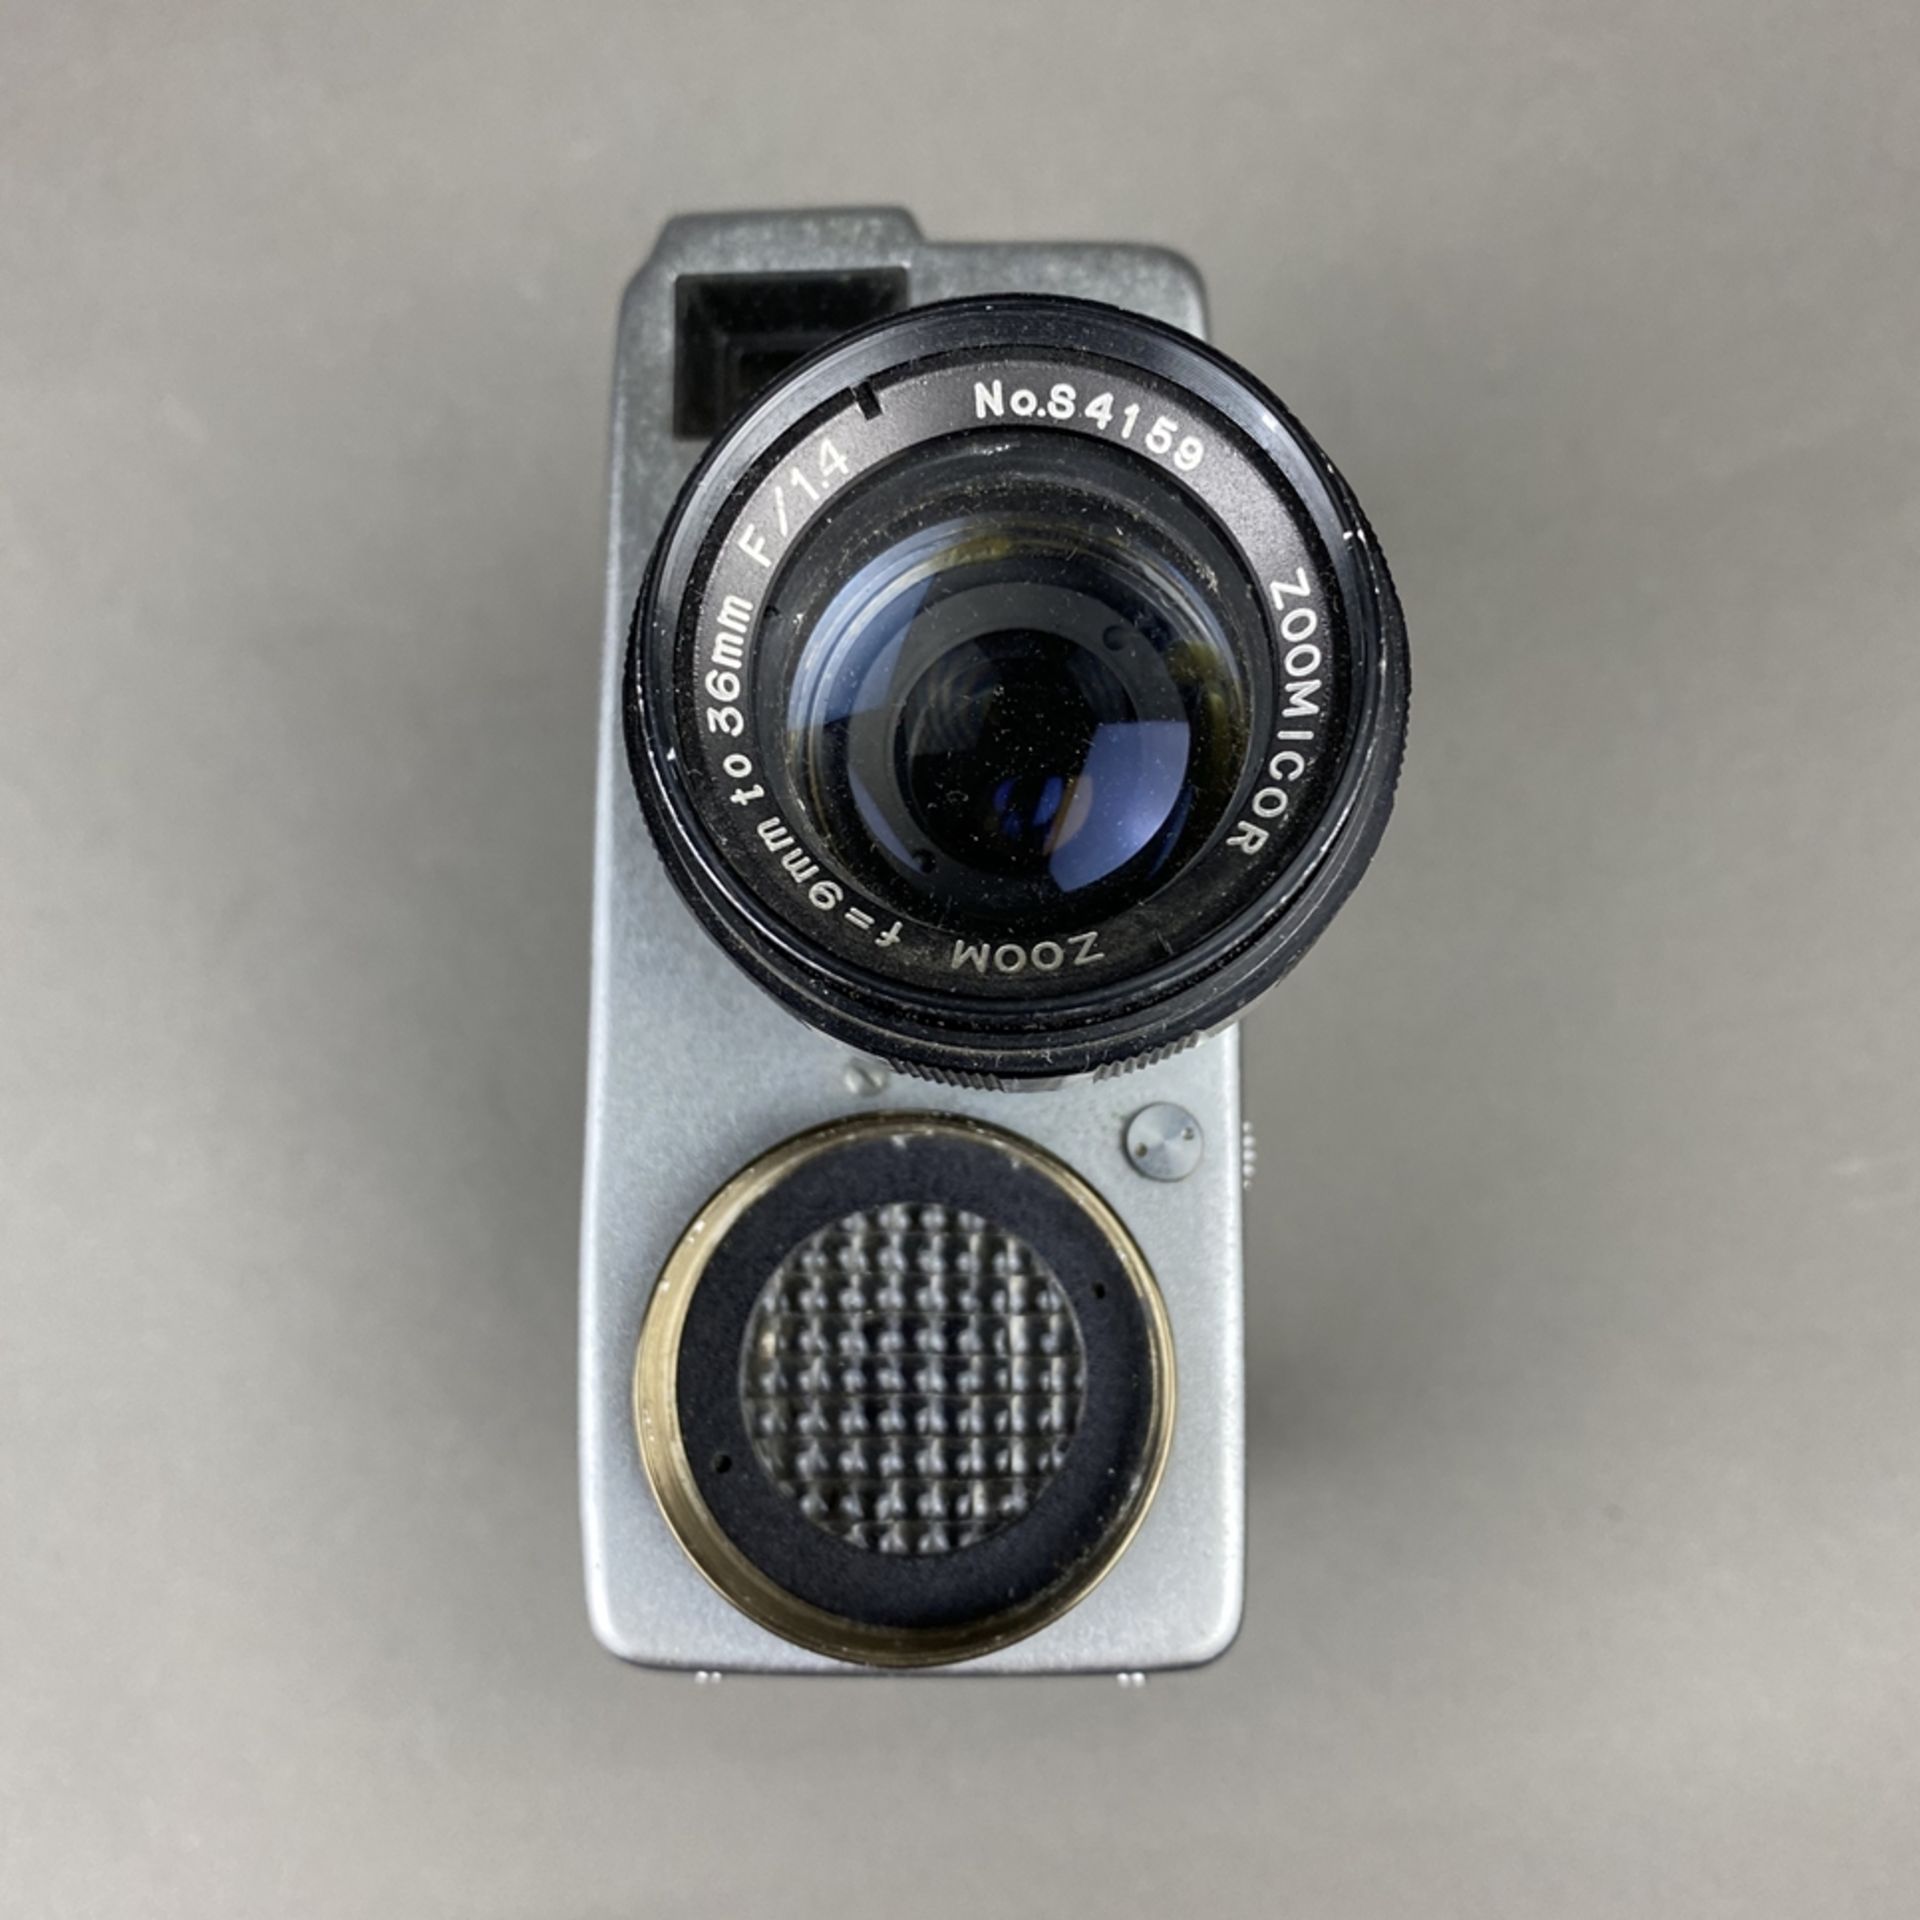 Vintage Filmkamera Zoomicon 8 - STK, Japan, Metallgehäuse, 1959/60, Objektiv Zoomicor / Zoom, f=9- - Bild 2 aus 8